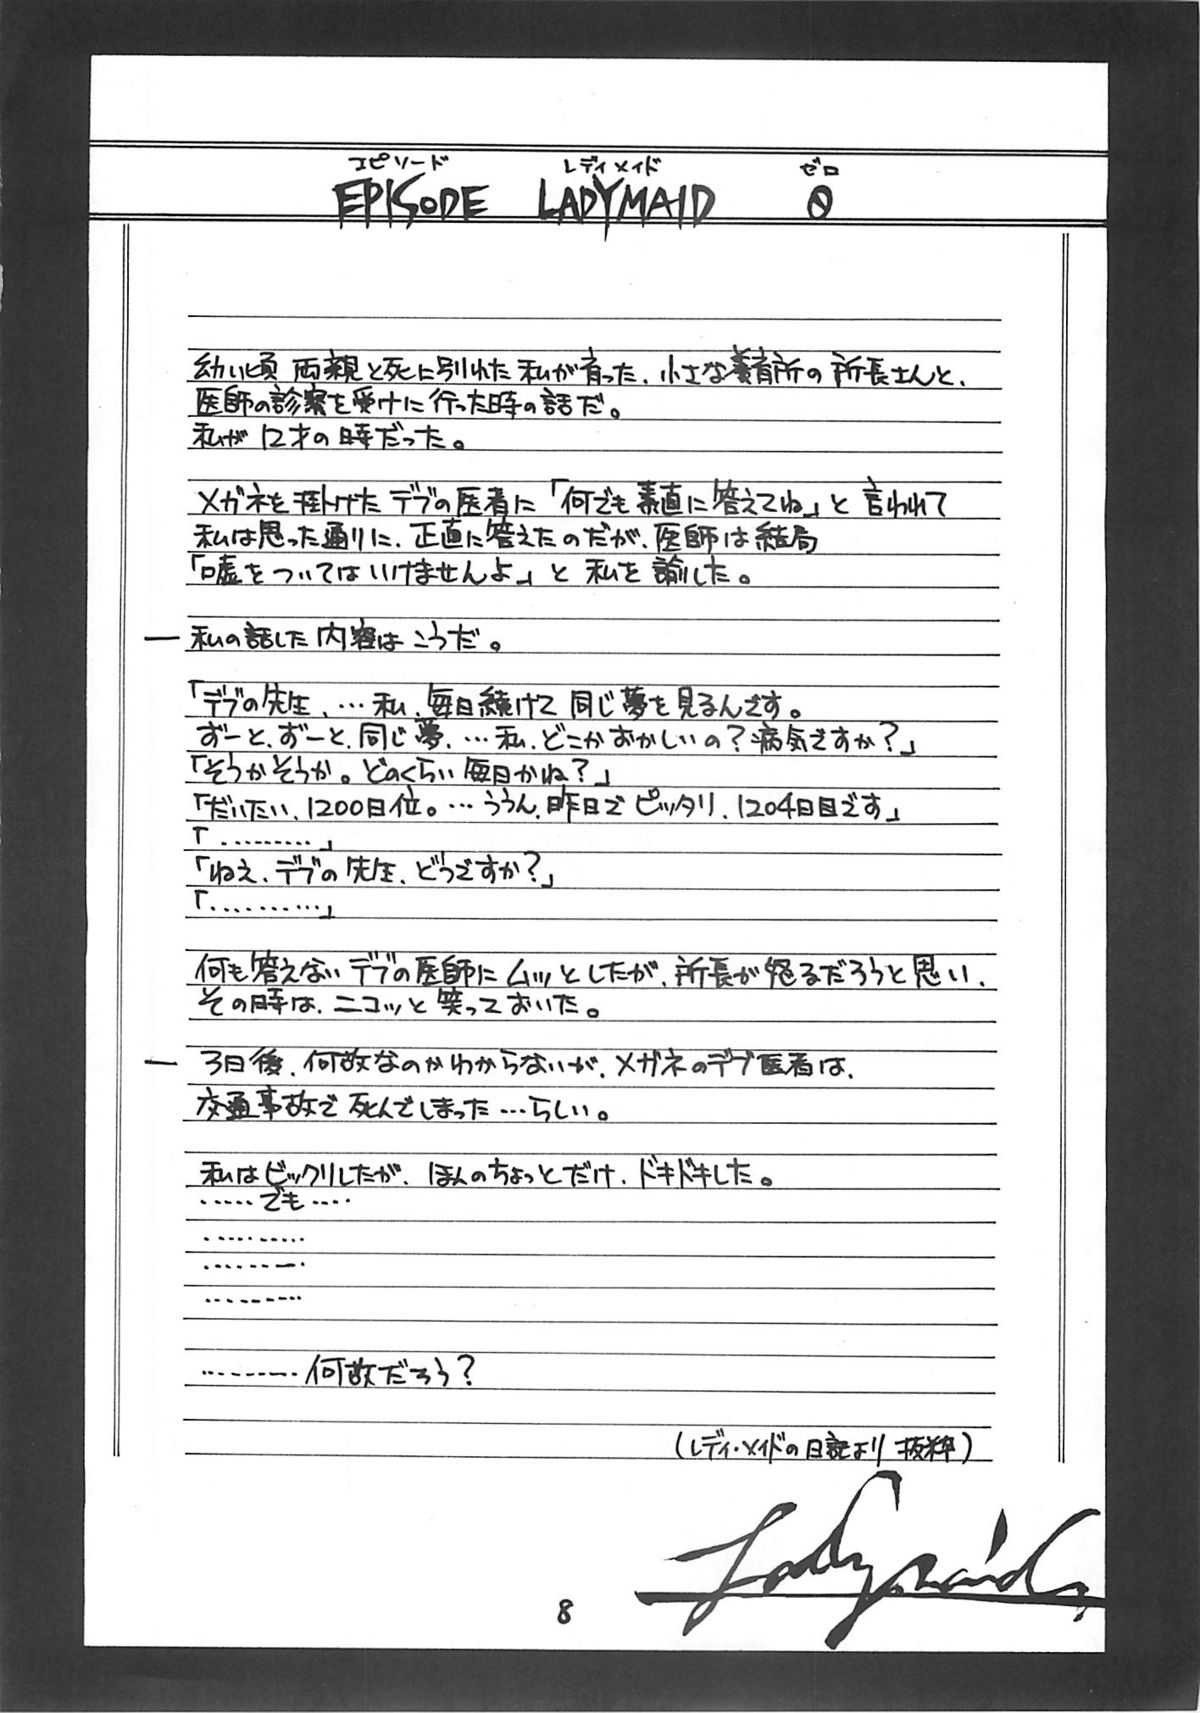 [Virgin Virus (Matsumi Jun)] Fukakutei Youso to Jinrui Kyuushi gaku no Mechanism ni kansuru Suitei Ronri (Kari) EPISODE LADYMAID 0 [2nd Edition] (Original) [Virgin Virus (真罪純)] 不確定要素と人類給仕学のメカニズムに関する推定論理(仮) EPISODE LADYMAID 0 [第2版] (オリジナル)